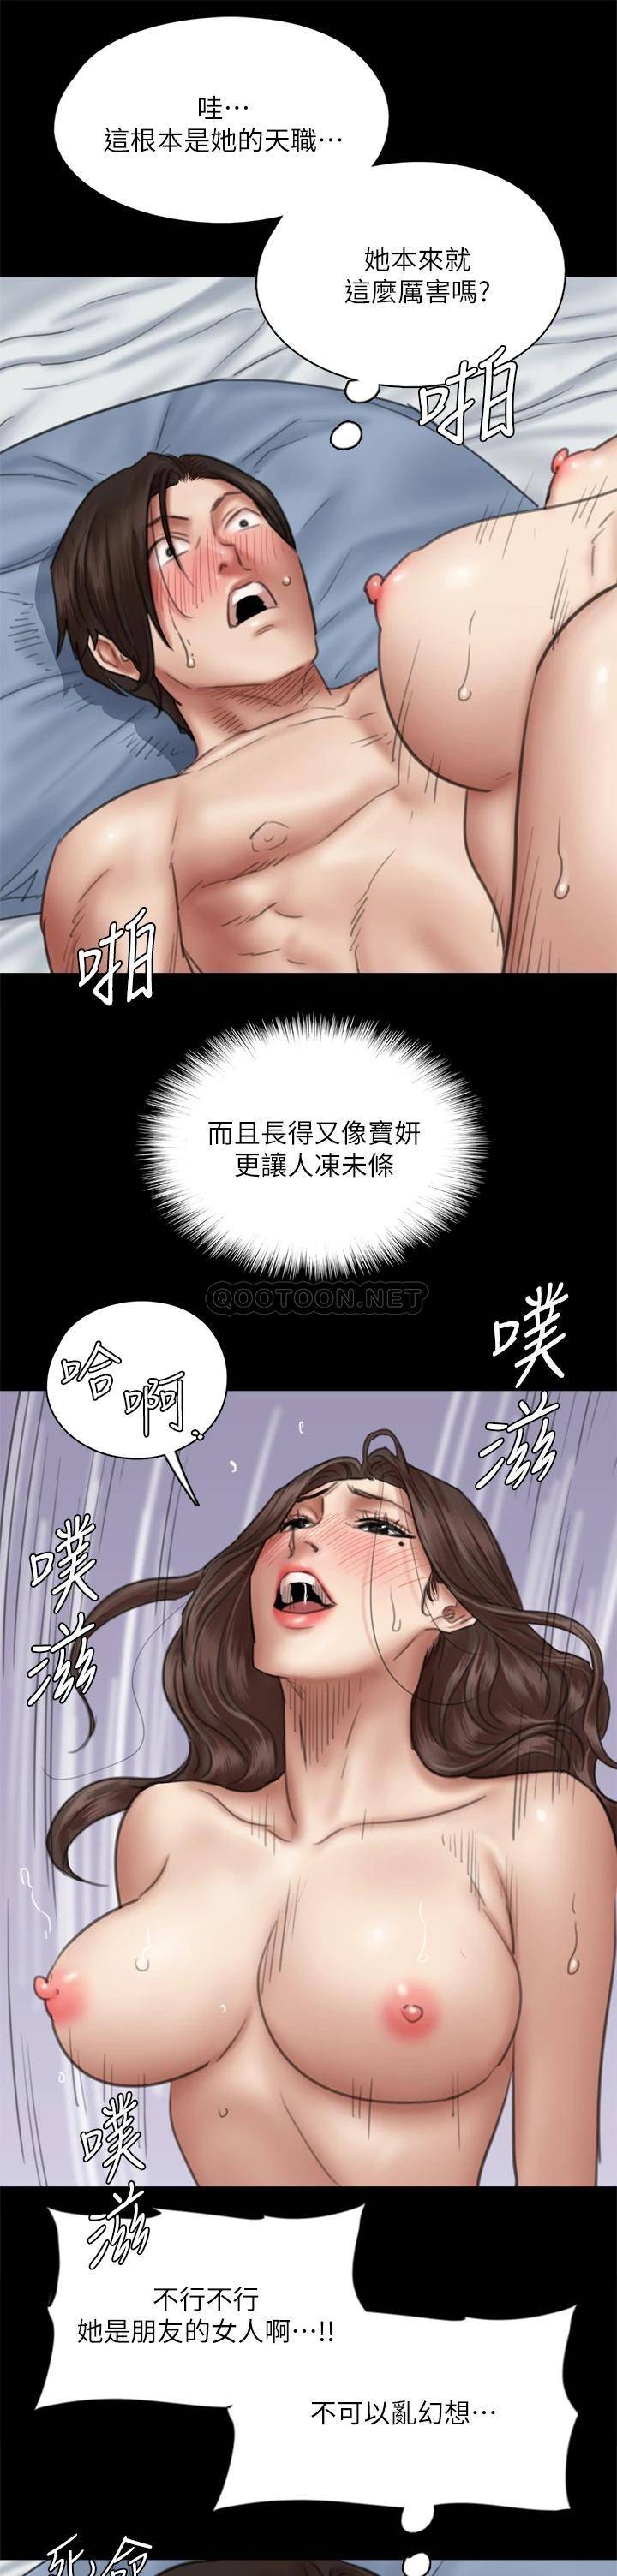 韩国污漫画 偶像女優 第43话给你无套撒必斯 13